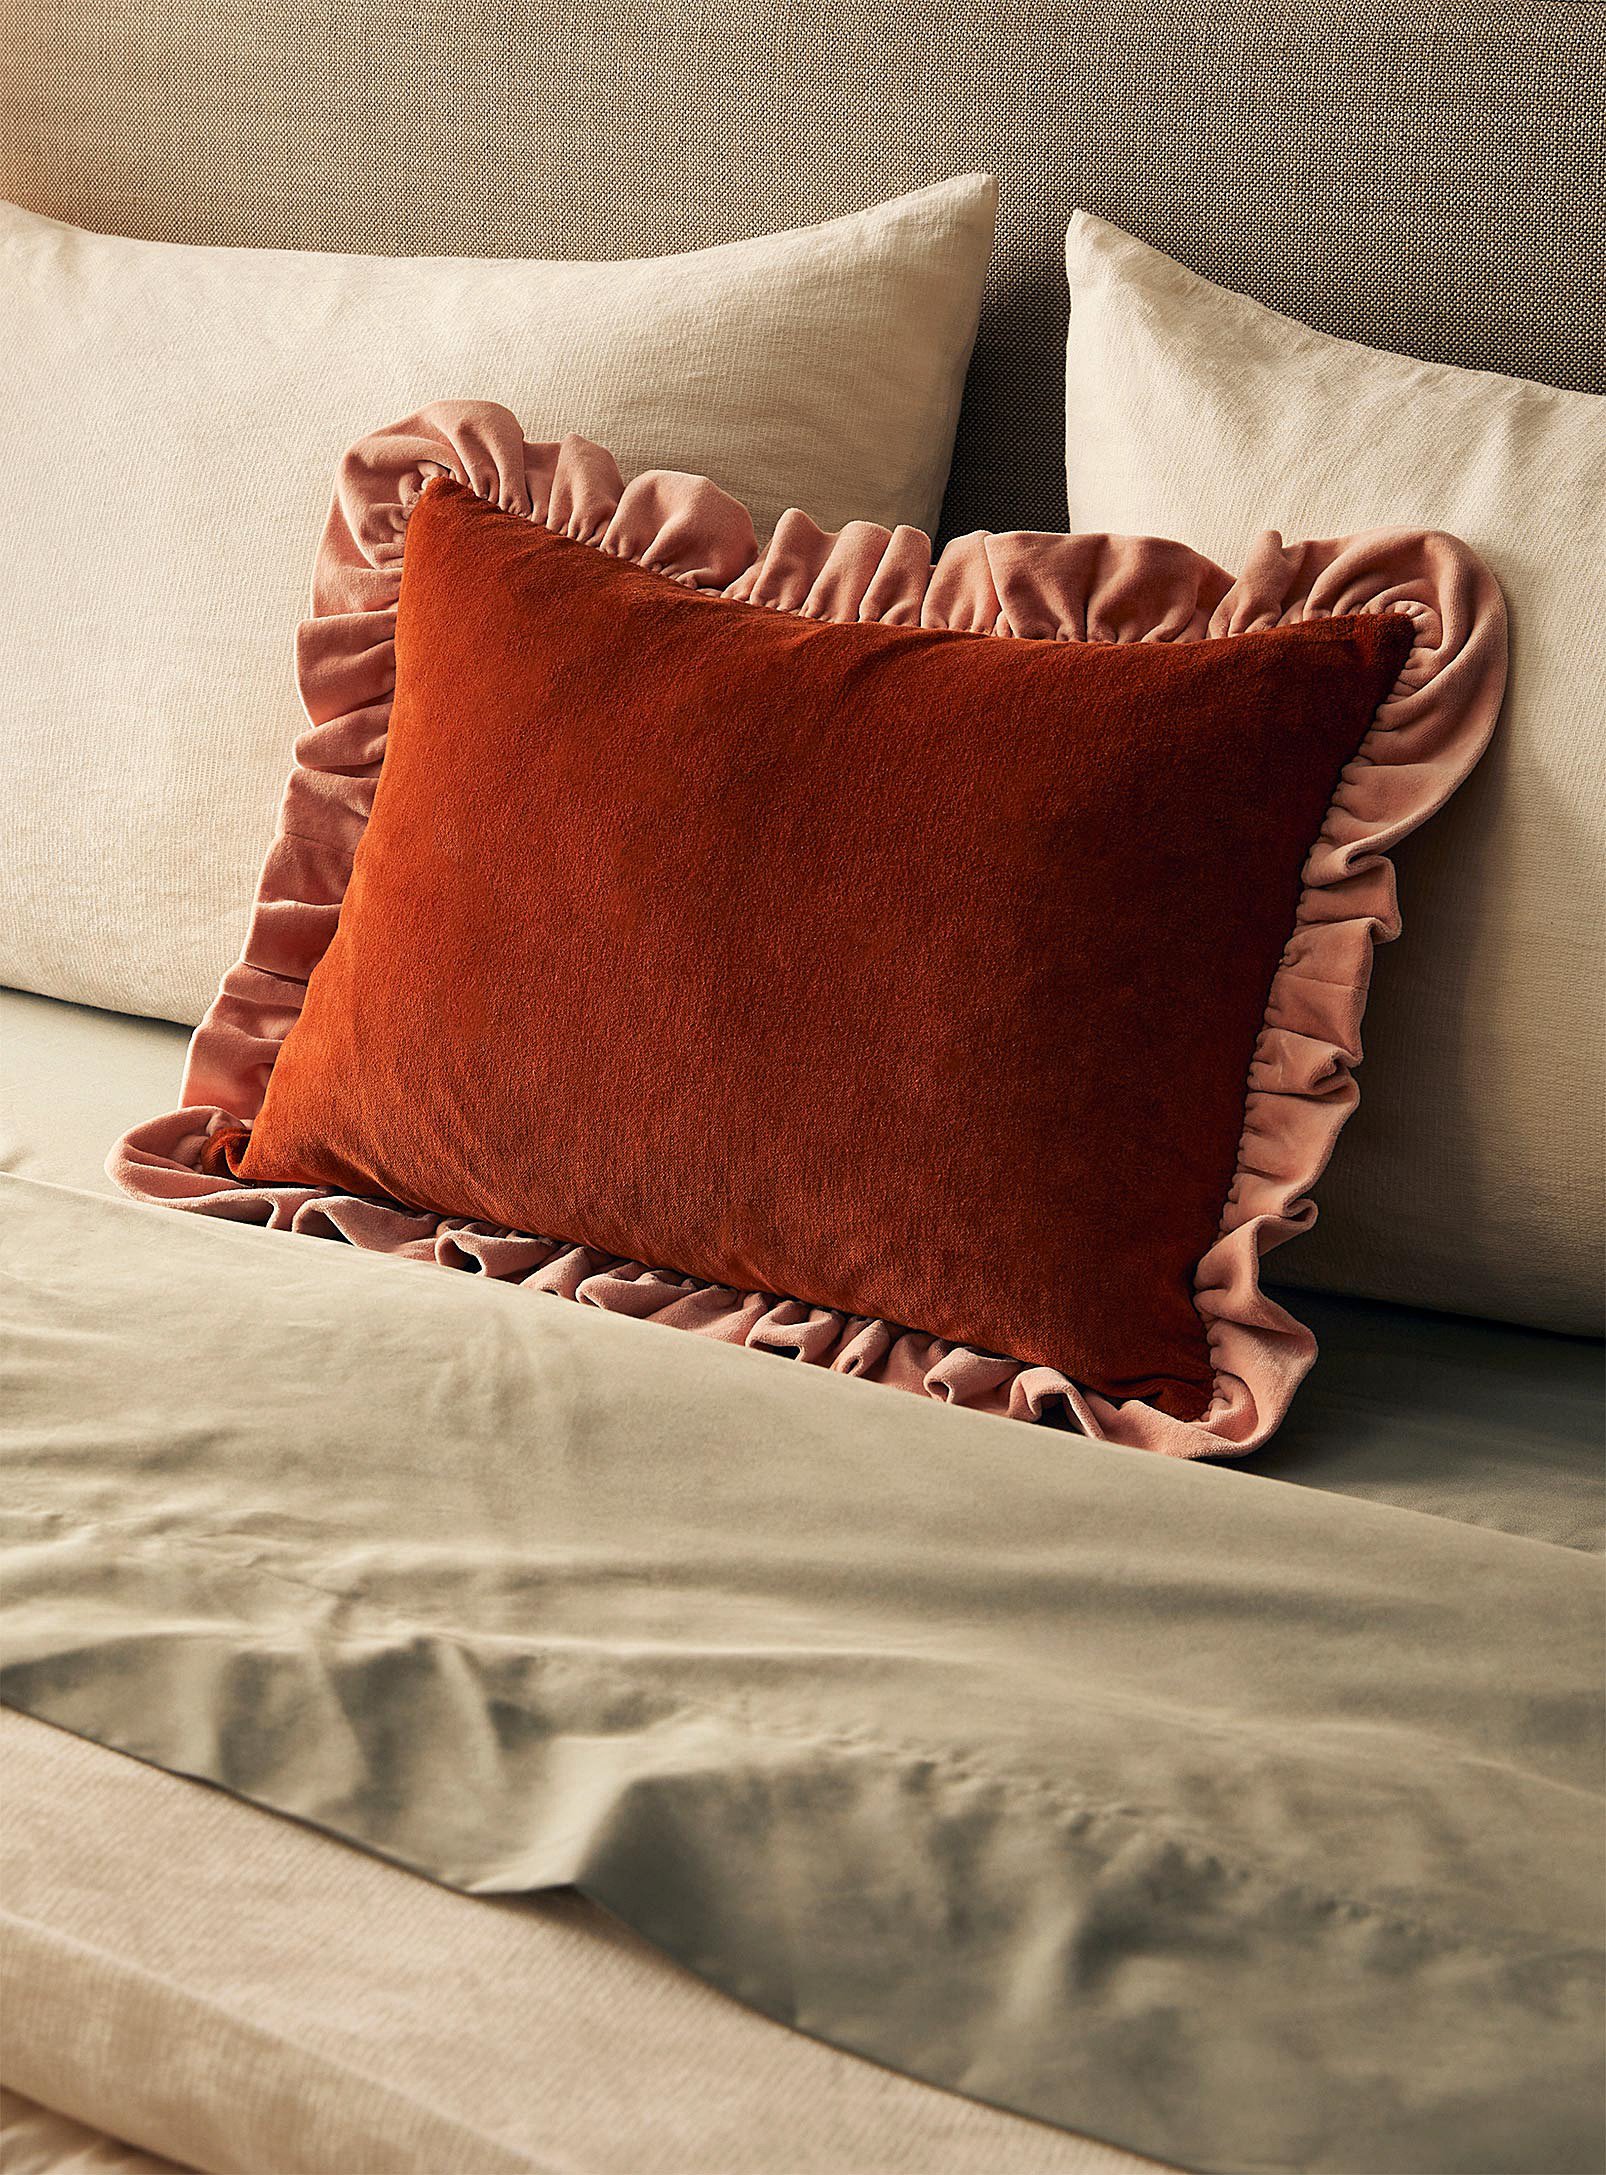 Projektityyny Leinikki Velvet Cushion 35 X 55 Cm In Orange